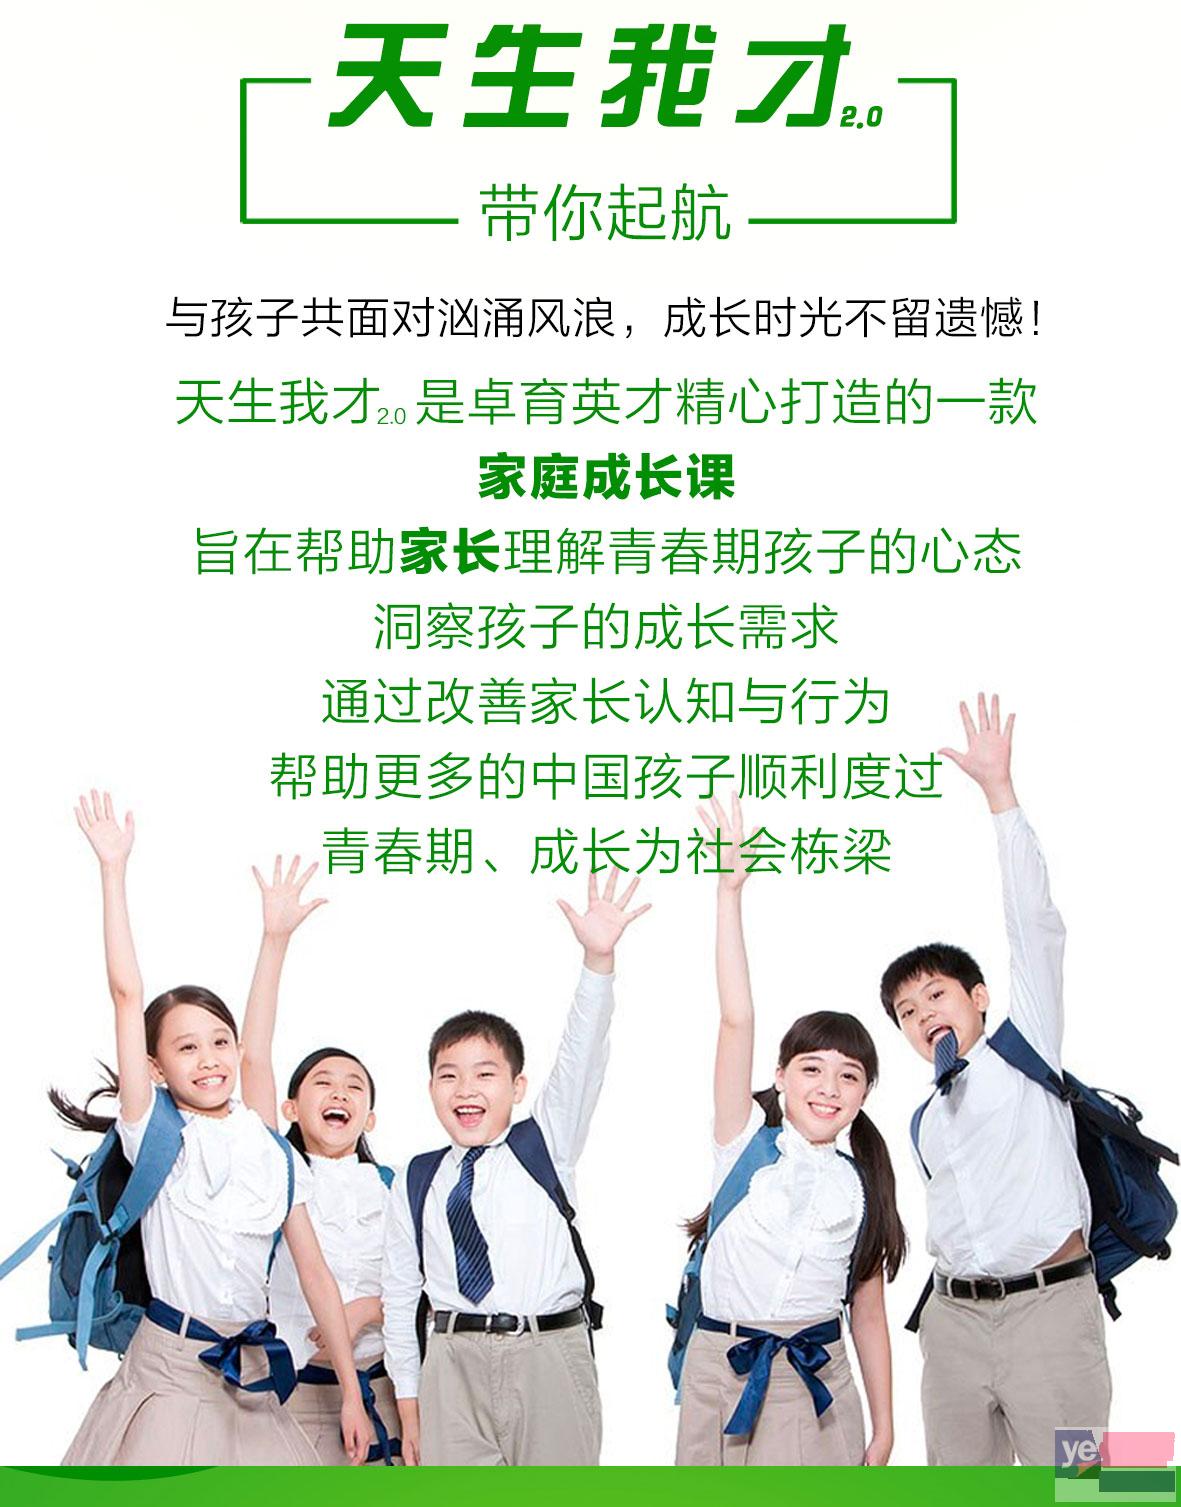 上海光和青春孩子厌学教育长沙有叛逆学校吗